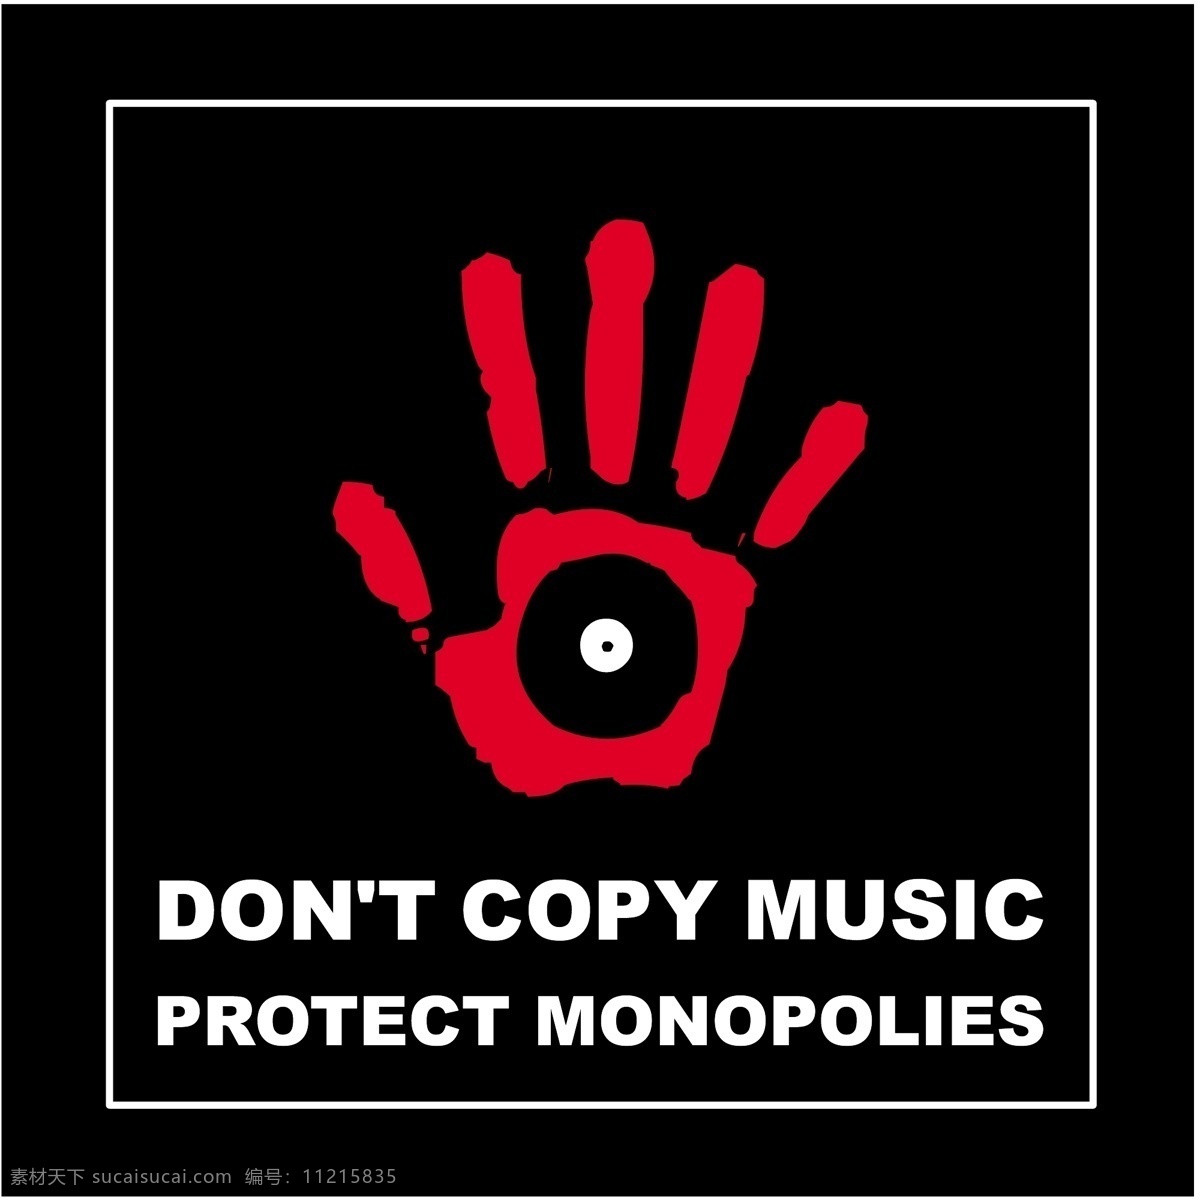 不要 复制 音乐 标识 公司 免费 品牌 品牌标识 商标 矢量标志下载 免费矢量标识 矢量 psd源文件 logo设计